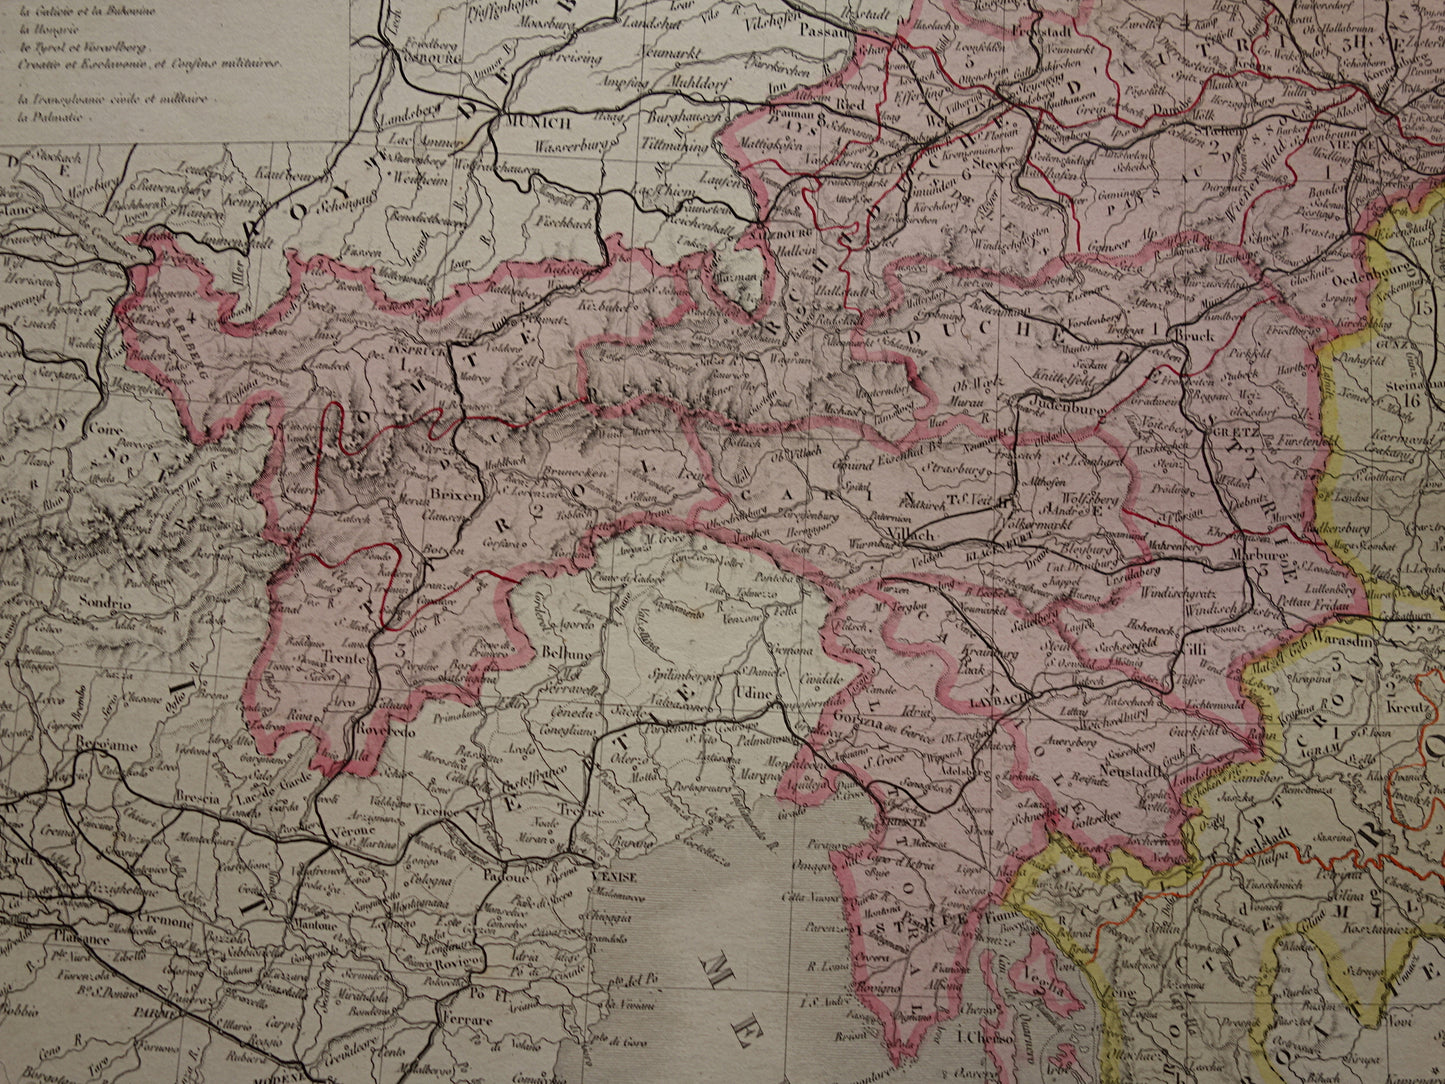 OOSTENRIJK-HONGARIJE Oude kaart van het Oostenrijks-Hongaarse Rijk uit 1876 originele grote antieke handgekleurde landkaart Tsjechië Kroatië Slovenië